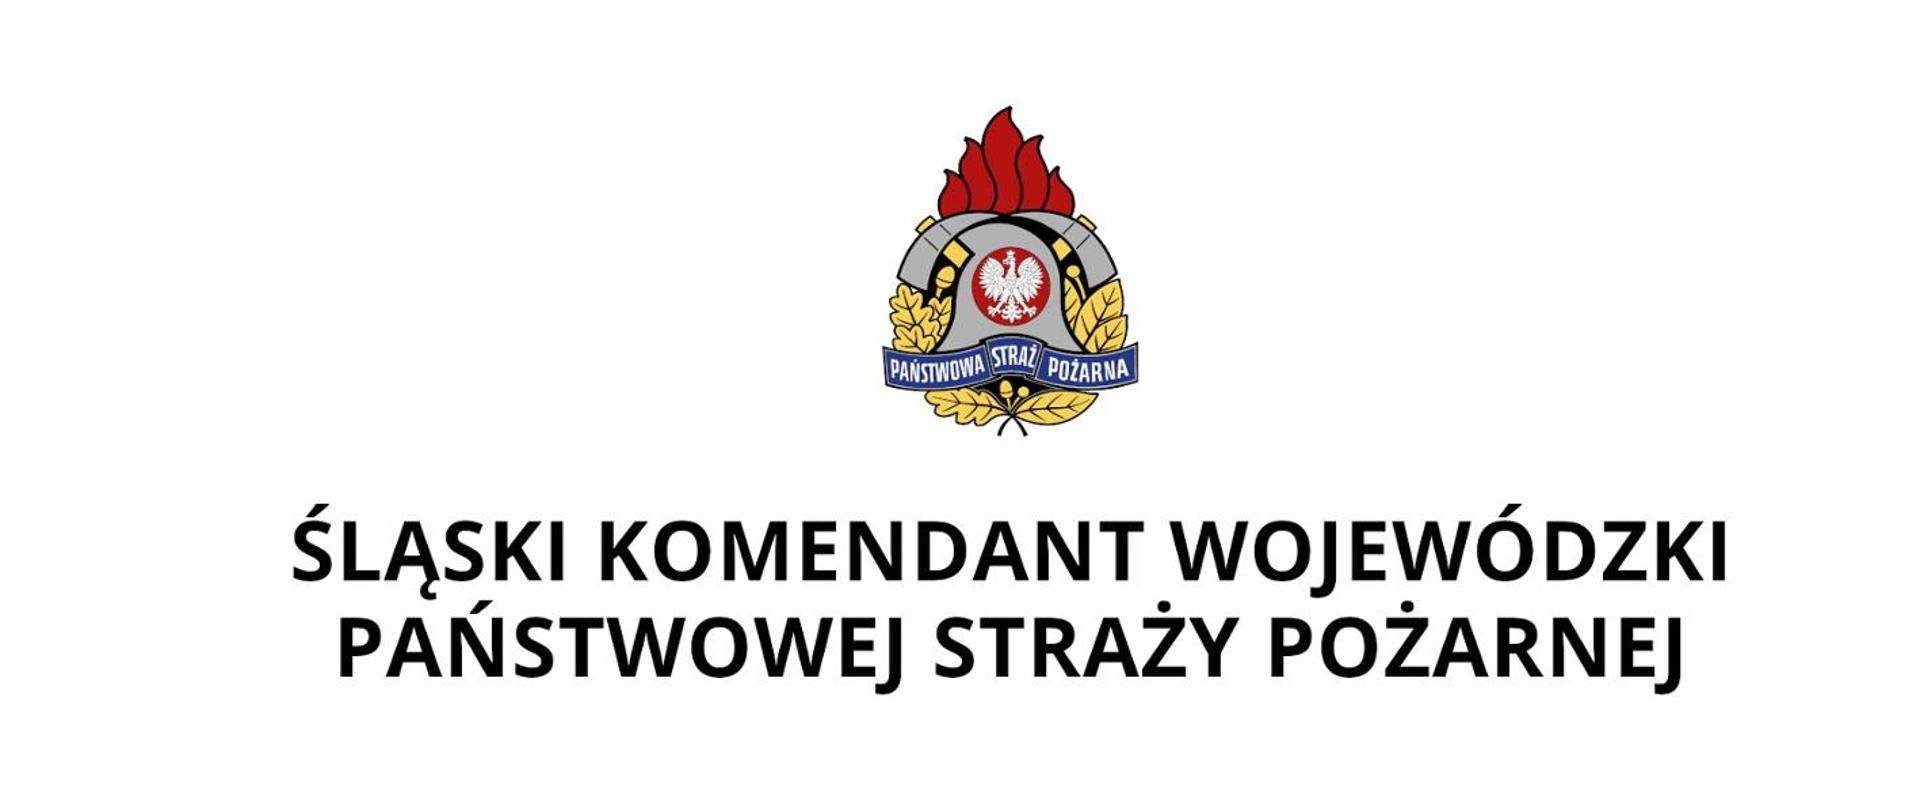 Zdjęcie przedstawia logo Śląskiego Komendanta Wojewódzkiego PSP z okazji Dnia StrażakaSygnetem (częścią graficzną) logo jest godło Państwowej Straży Pożarnej. 